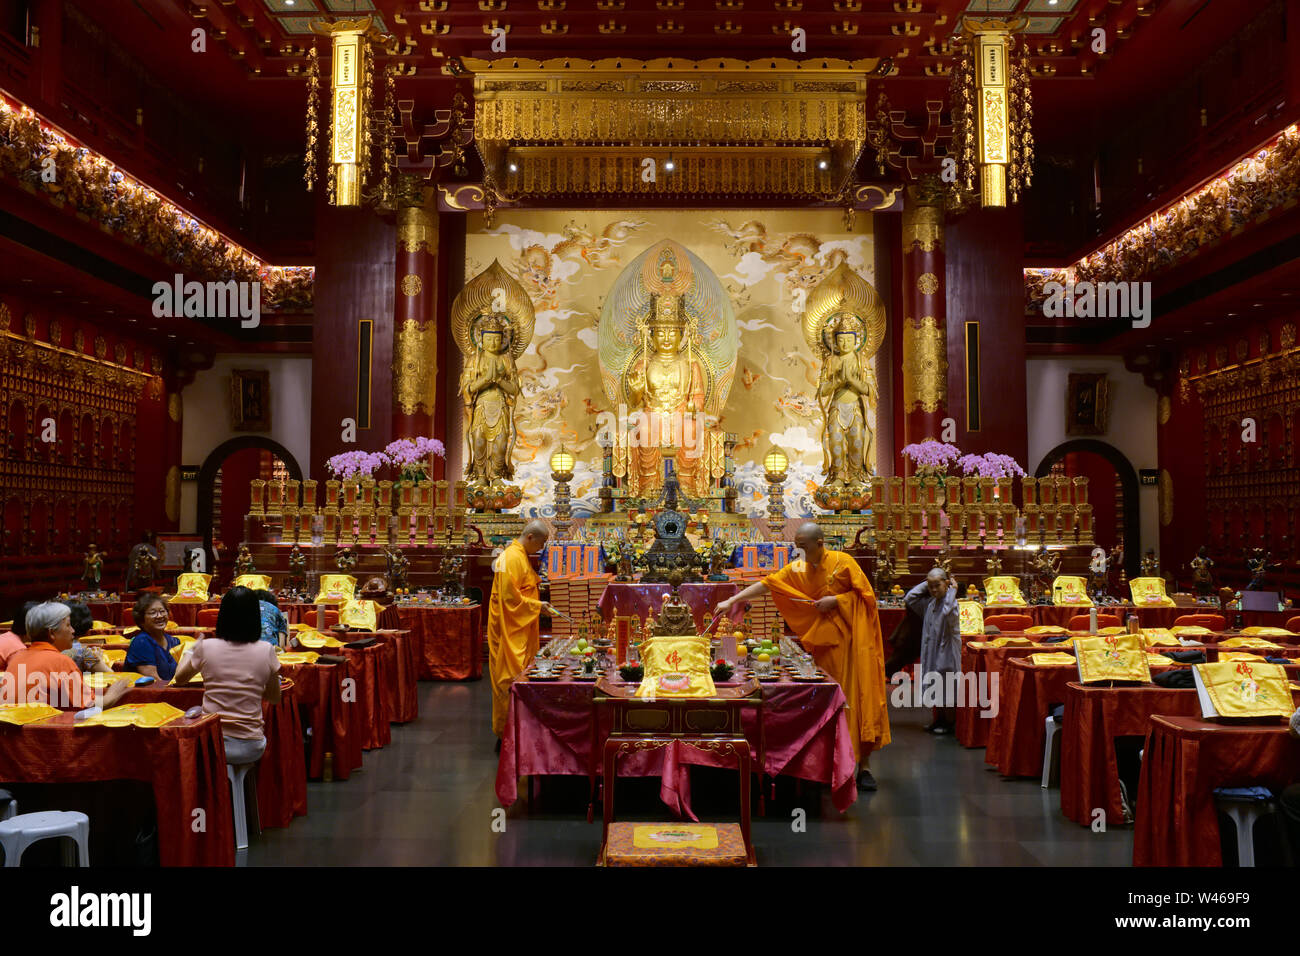 Durante le preghiere del mattino nella simbolica del Dente del Buddha Tempio reliquia & Museum a Chinatown, Singapore, i sacerdoti svolgono un rituale di fronte al santuario principale Foto Stock